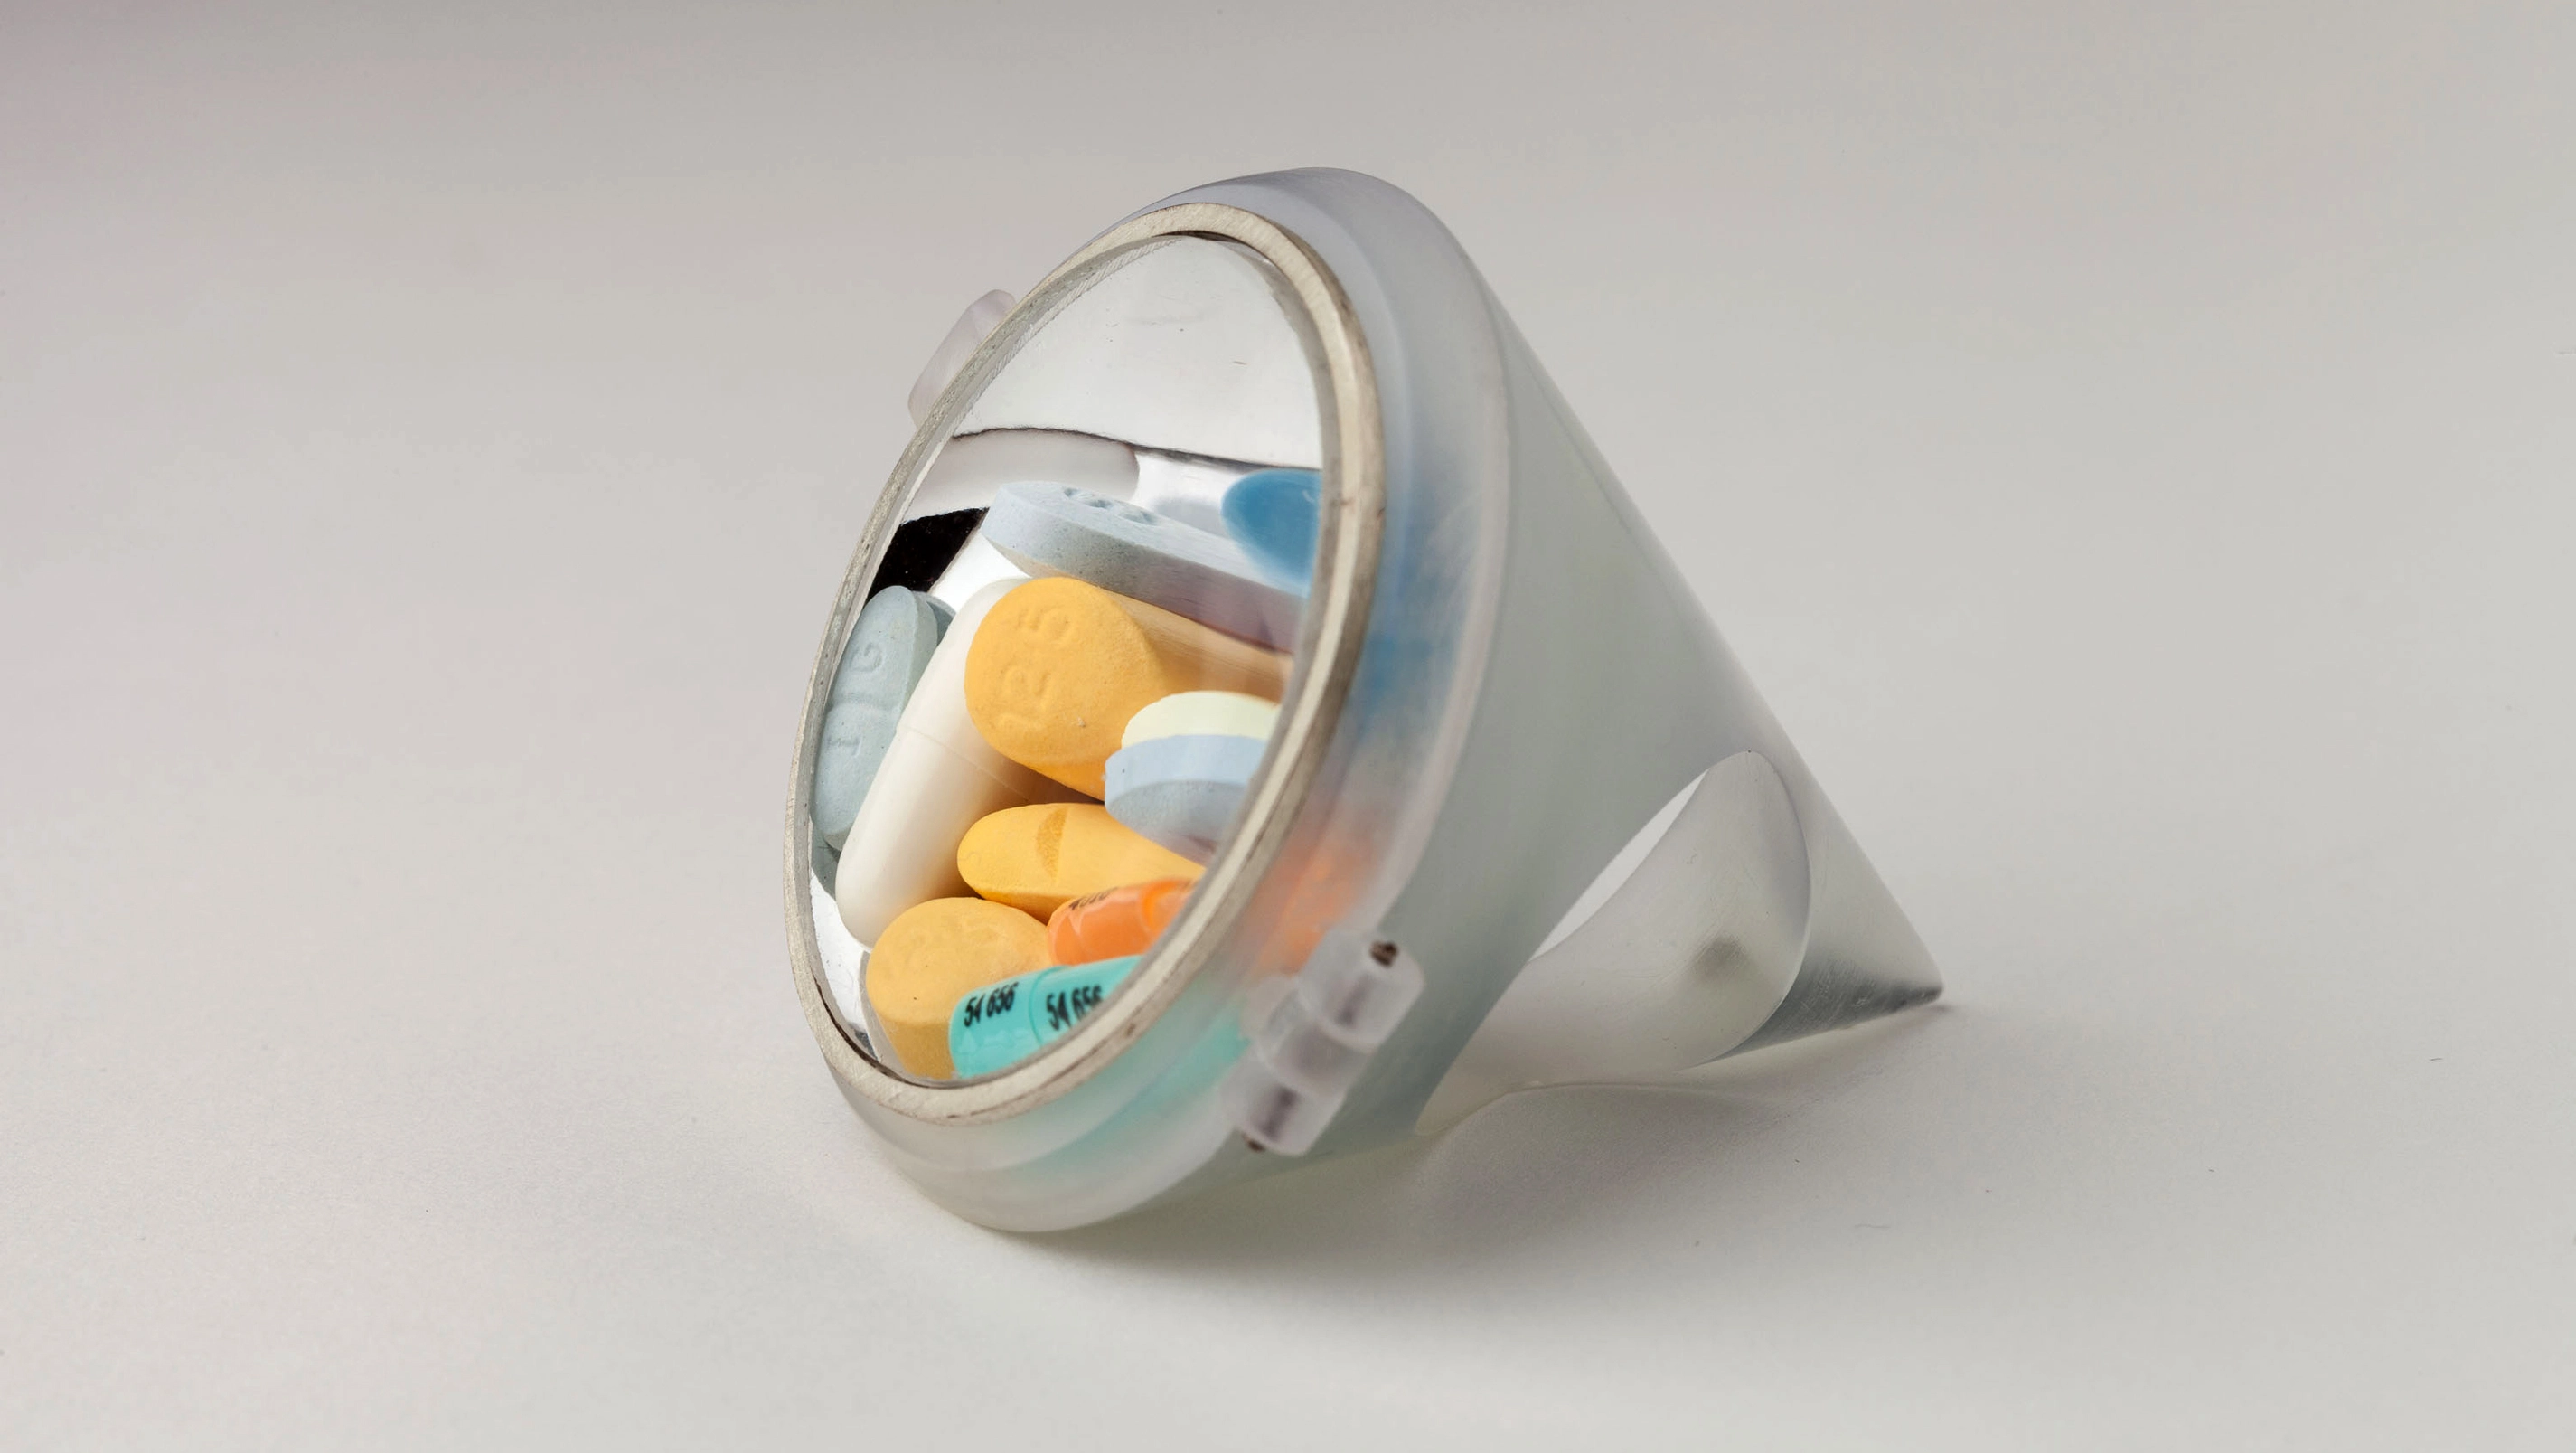 An art piece showing pills inside of a circular prism